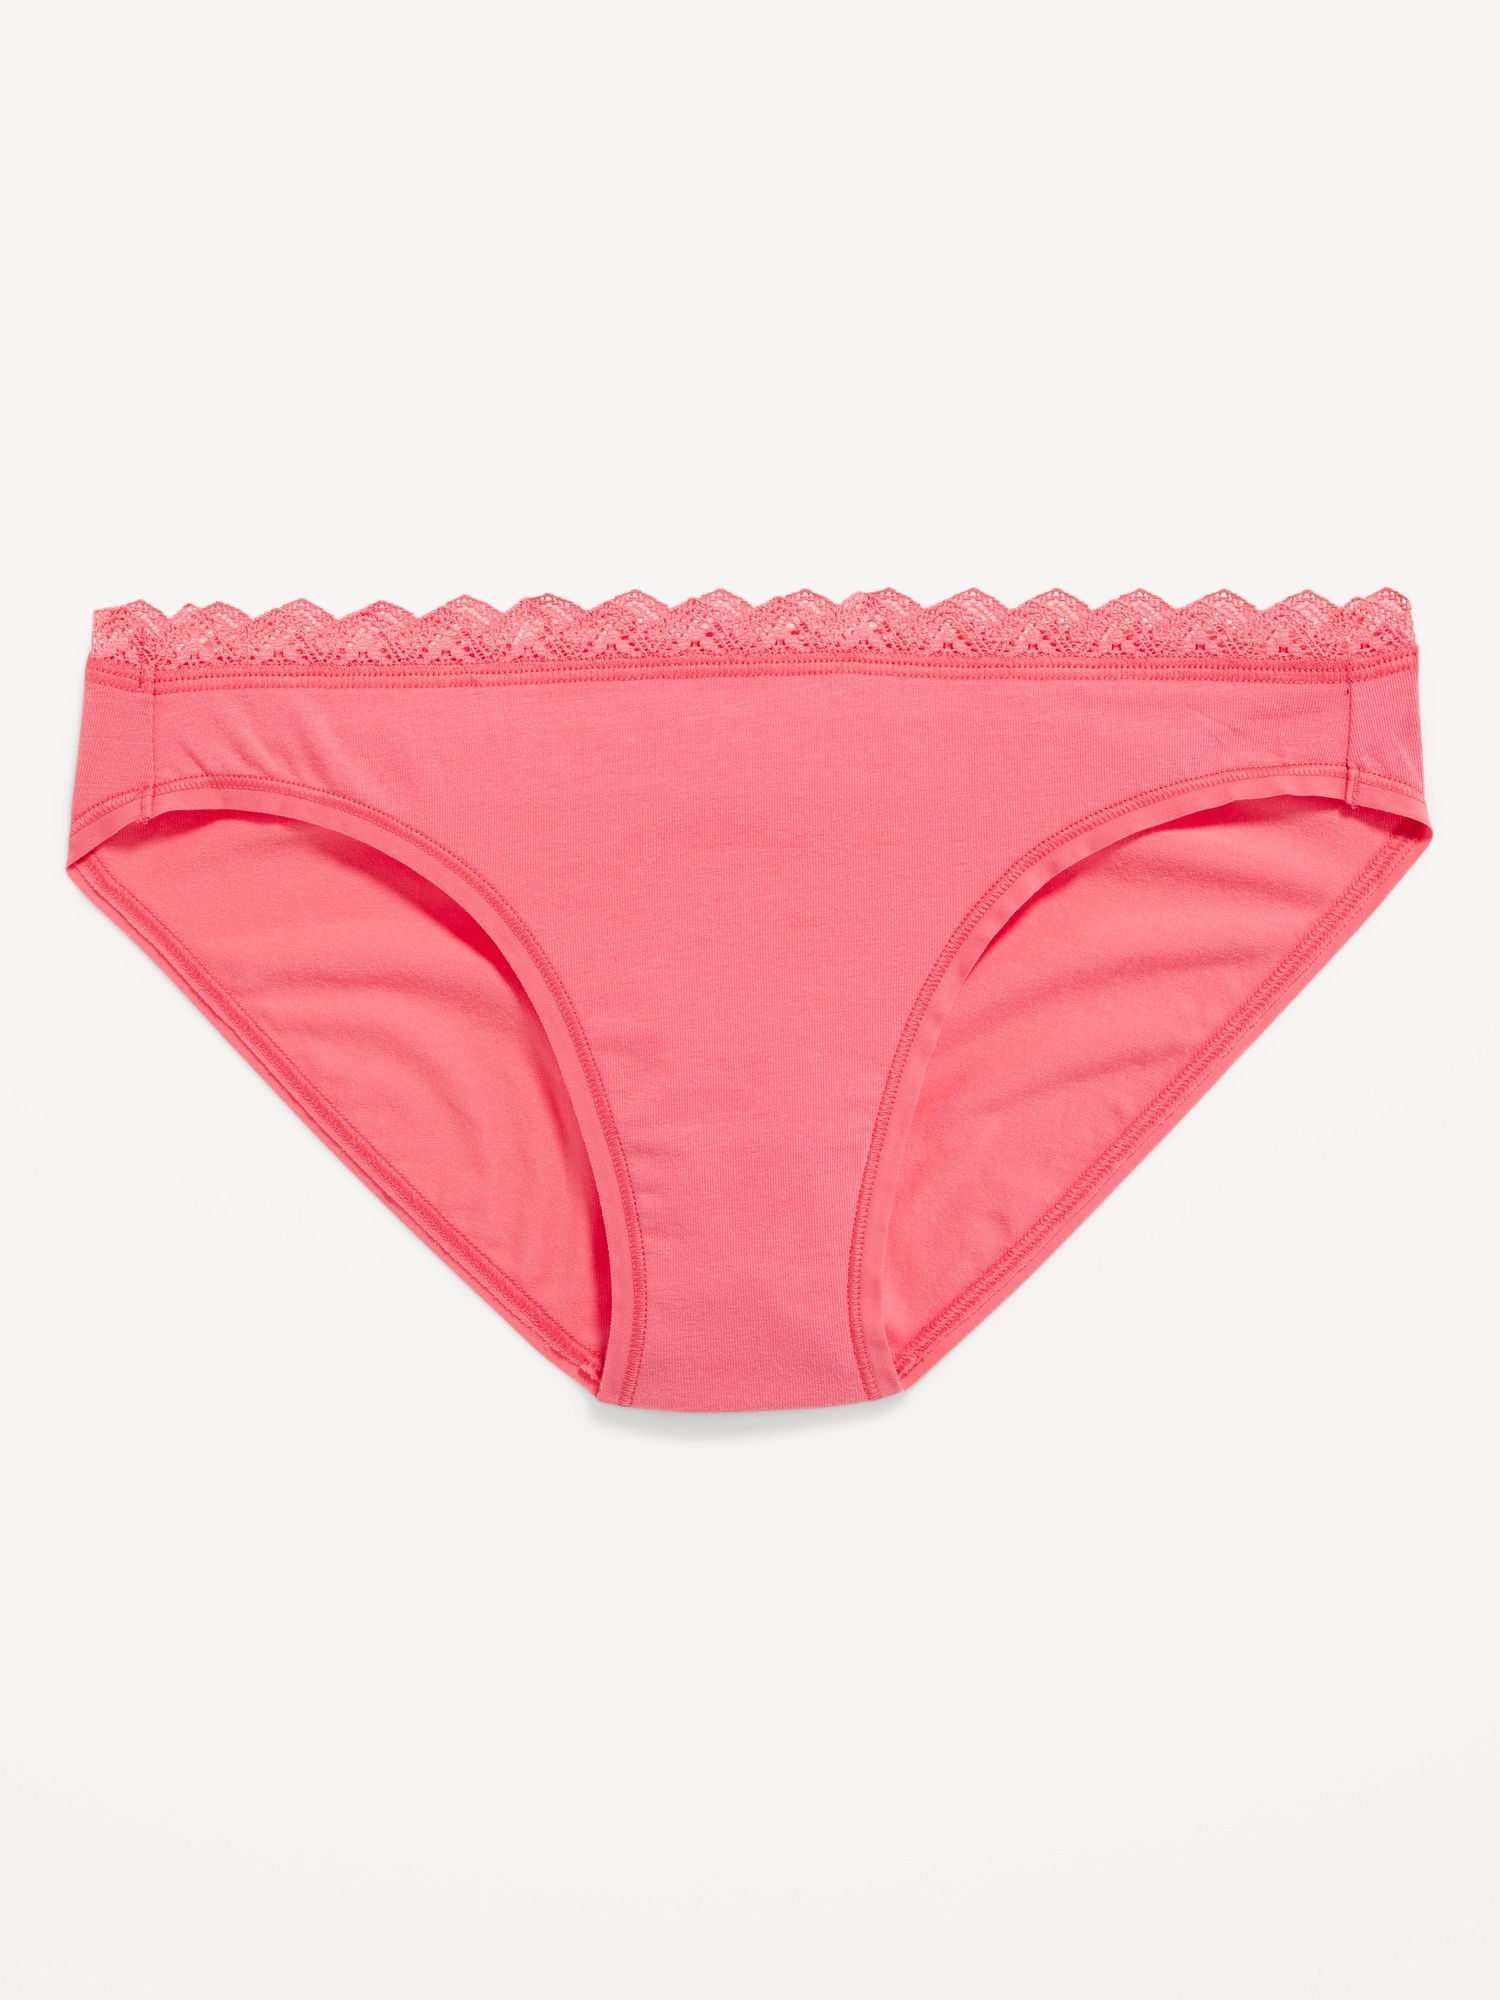 Annenmy Lace Underwear For Women Cotton Bikini Panties For Women